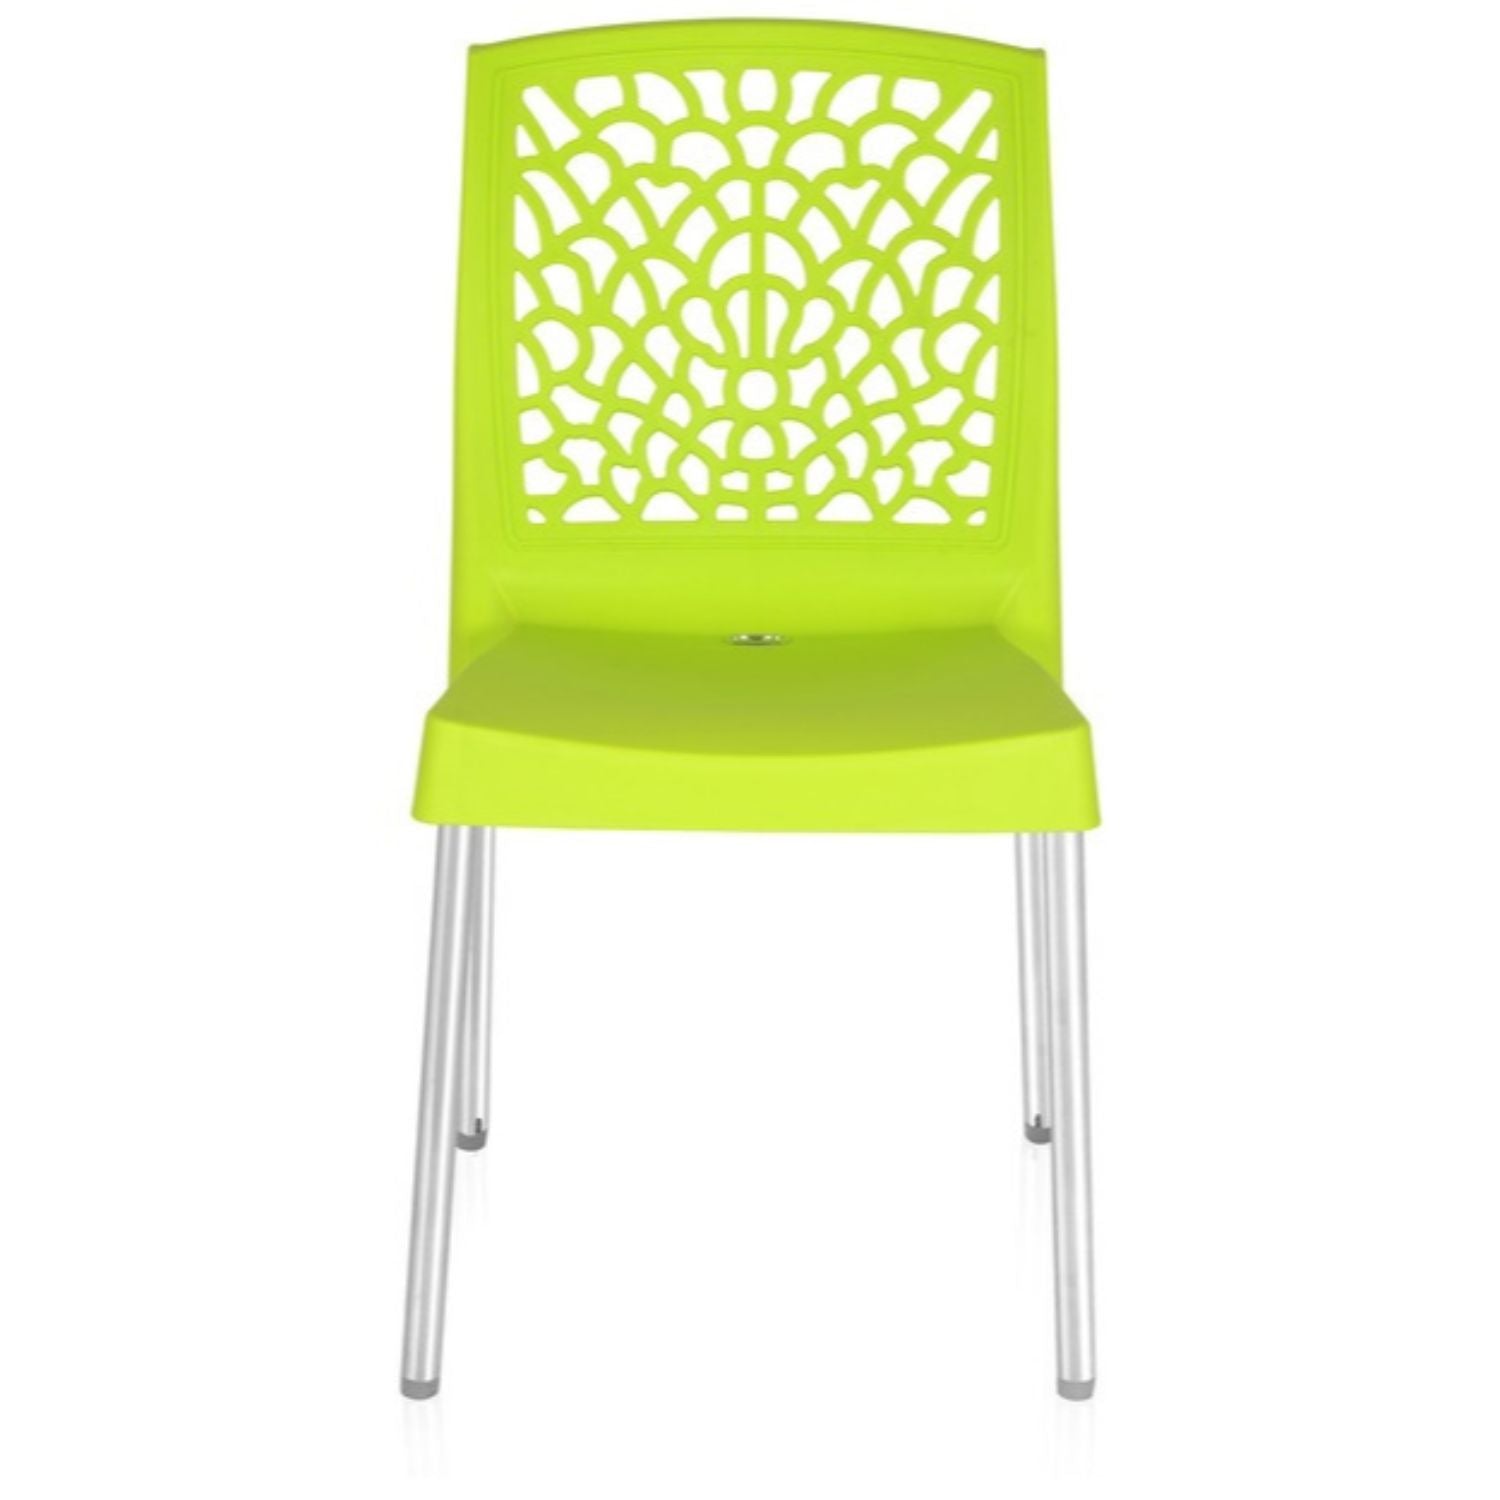 Nilkamal Novella 19 Stainless Steel Chair (Citrus Green)